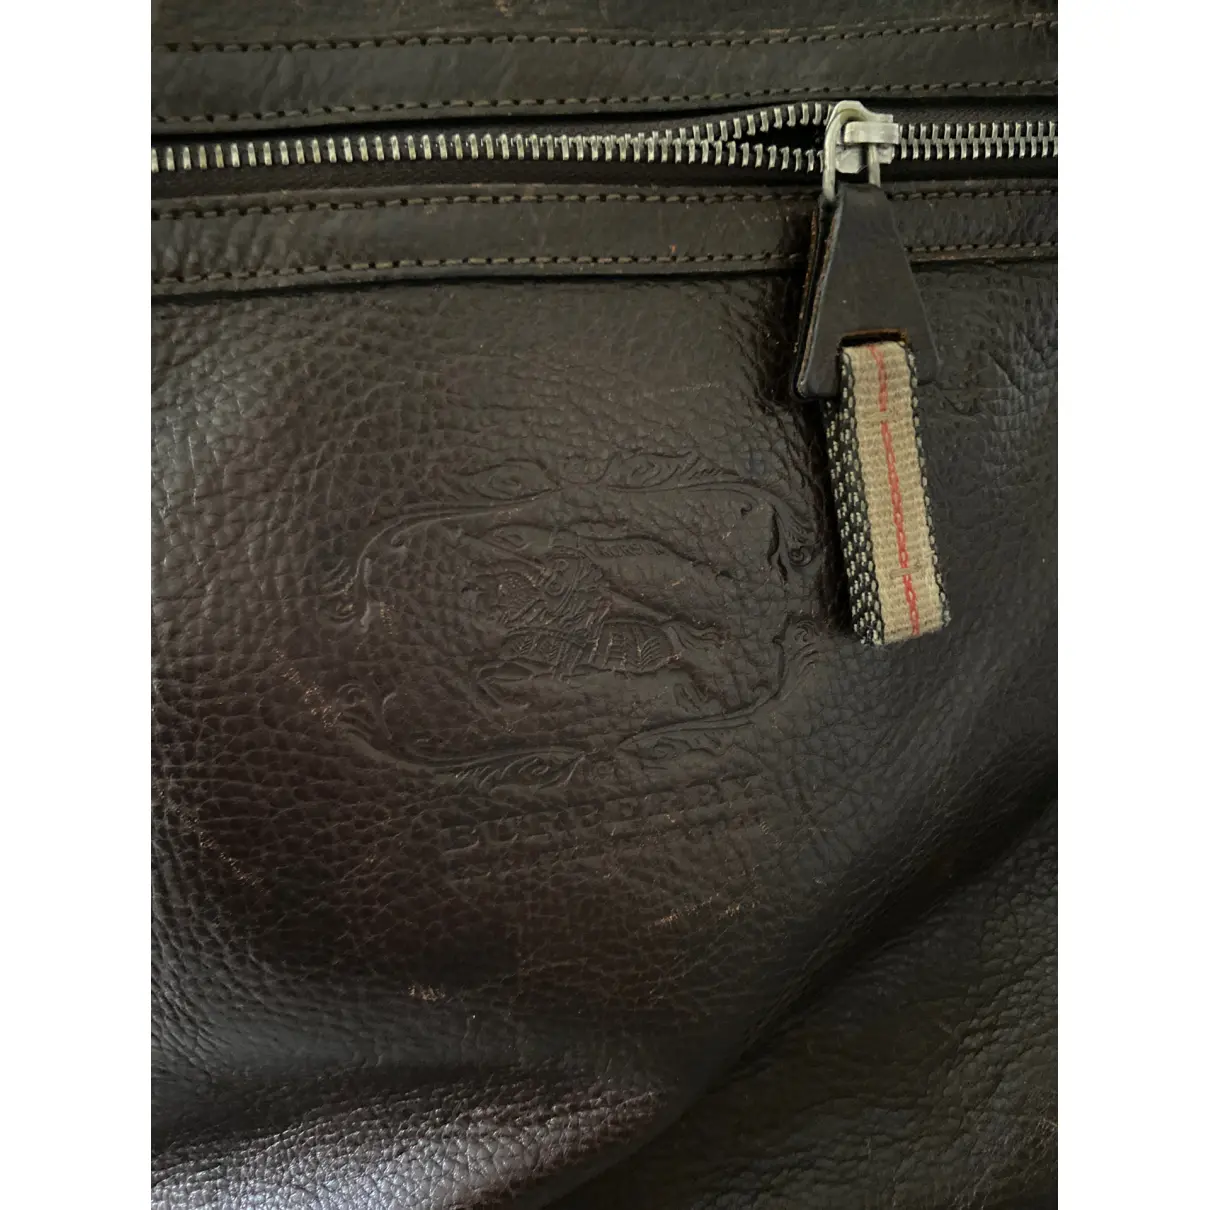 Buy Burberry Leather bag online - Vintage